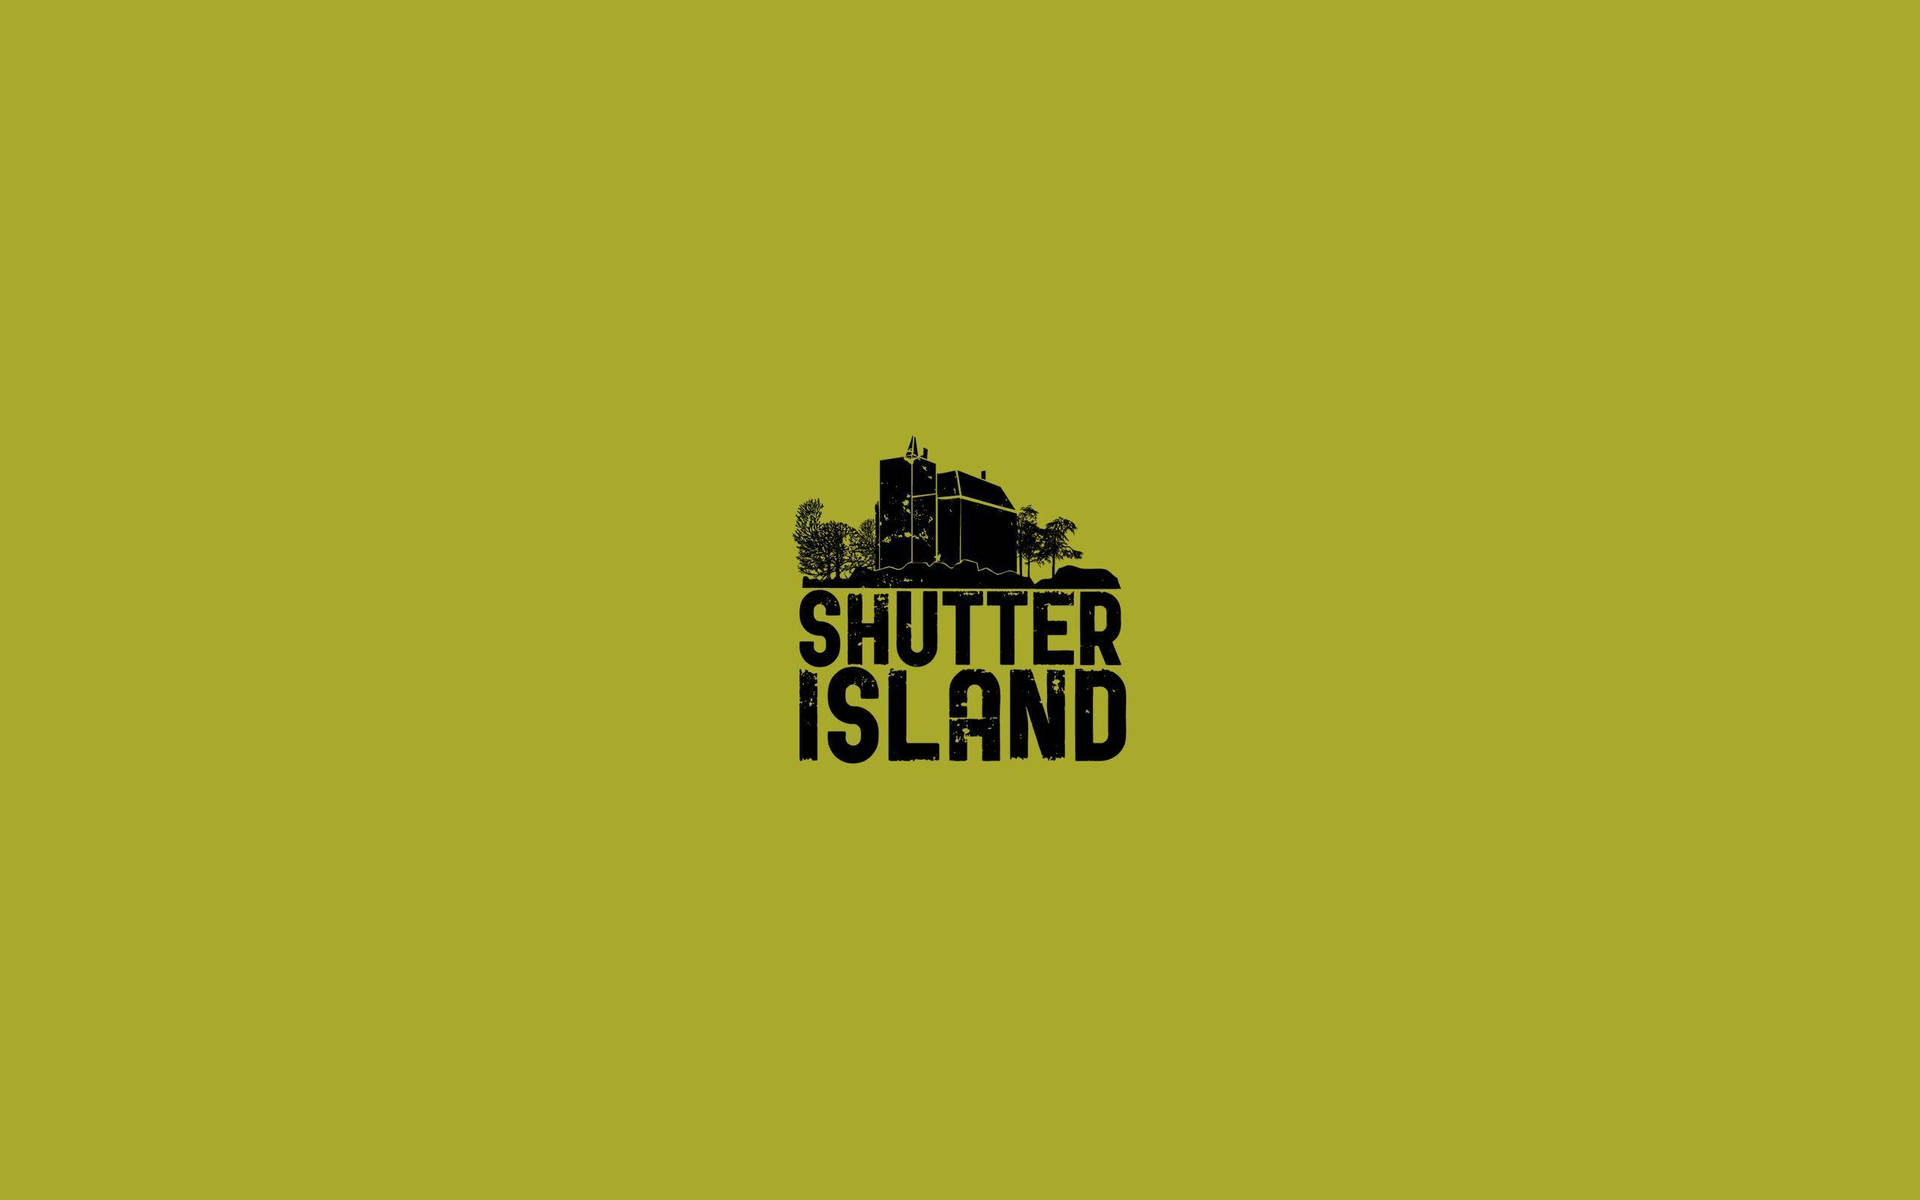 Shutter Island 2560 X 1600 Wallpaper